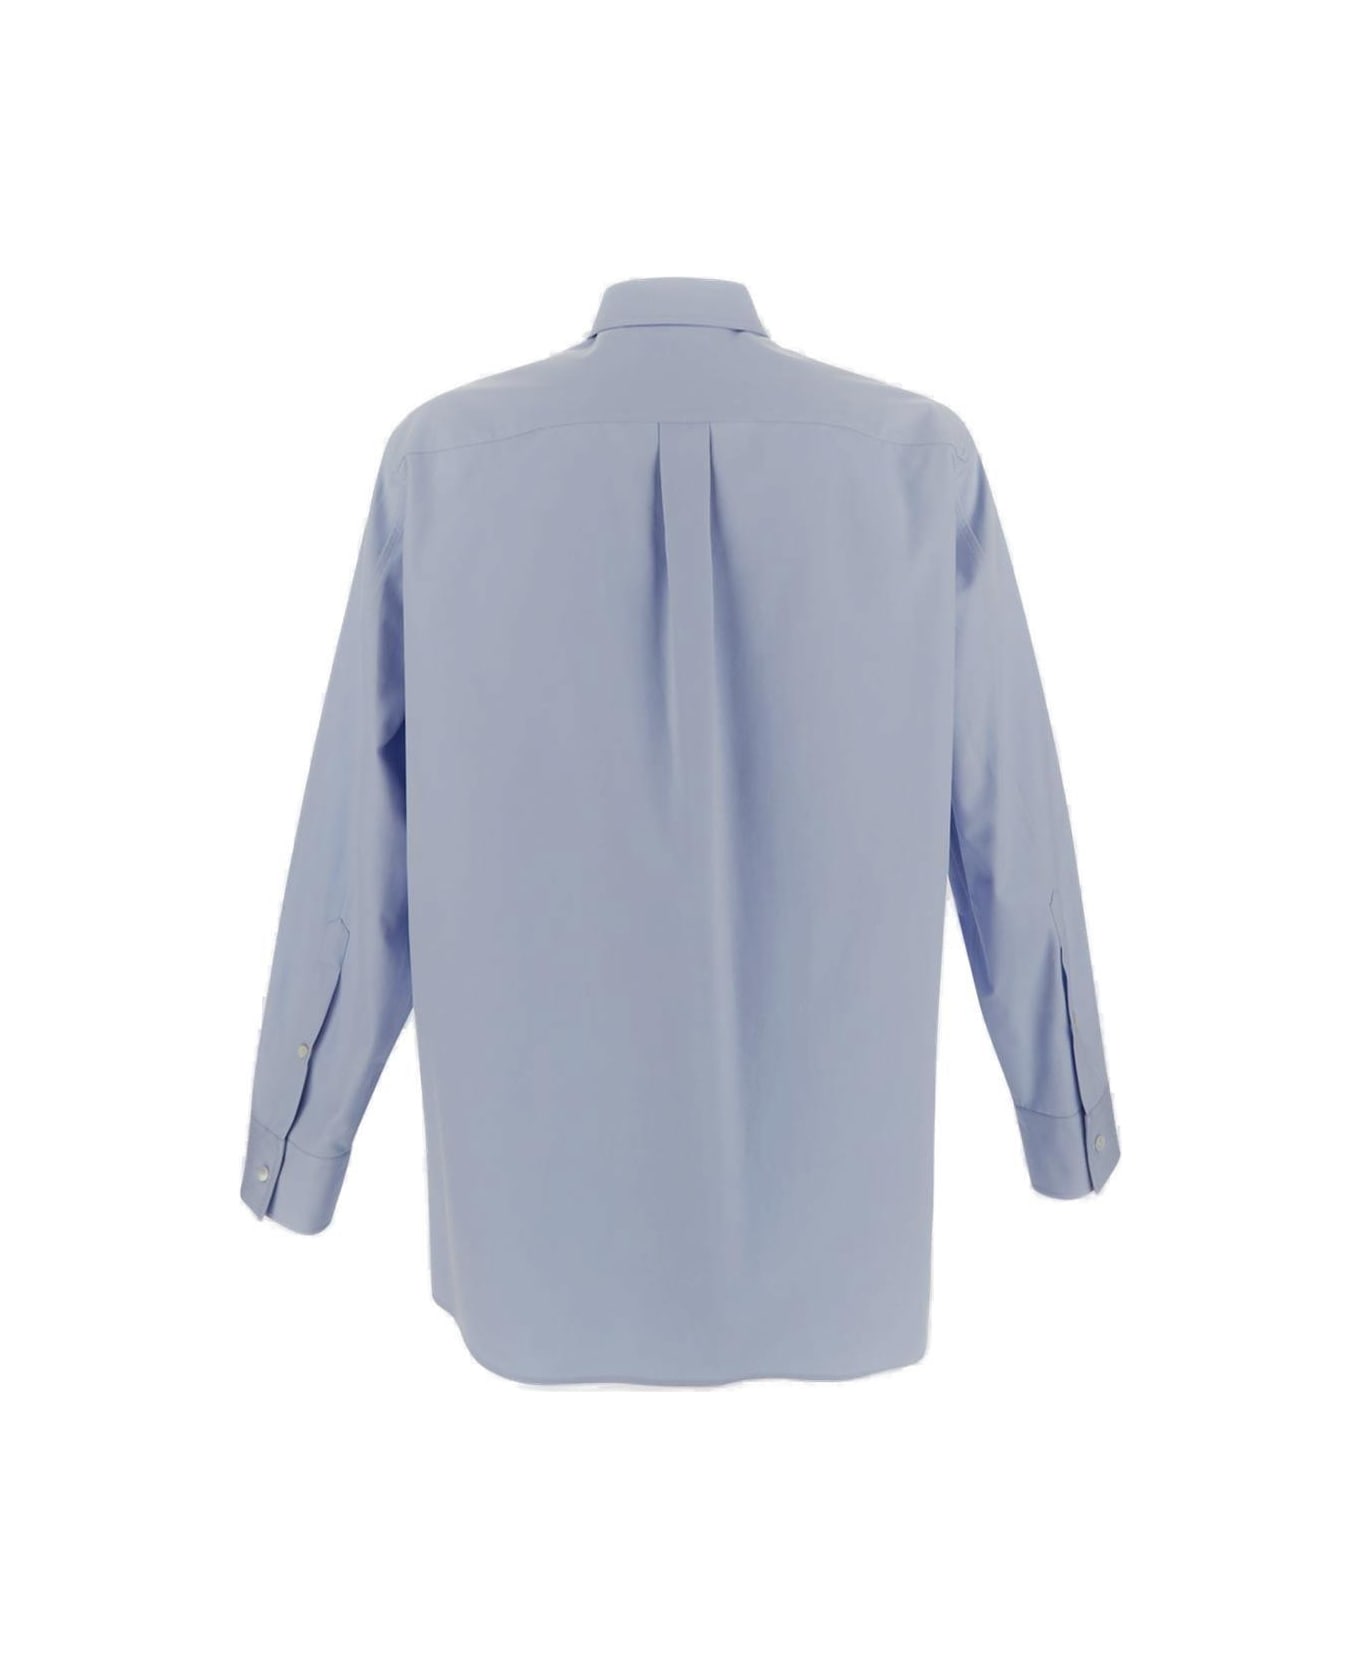 Valentino Classic Chest Pocket Shirt - Azure